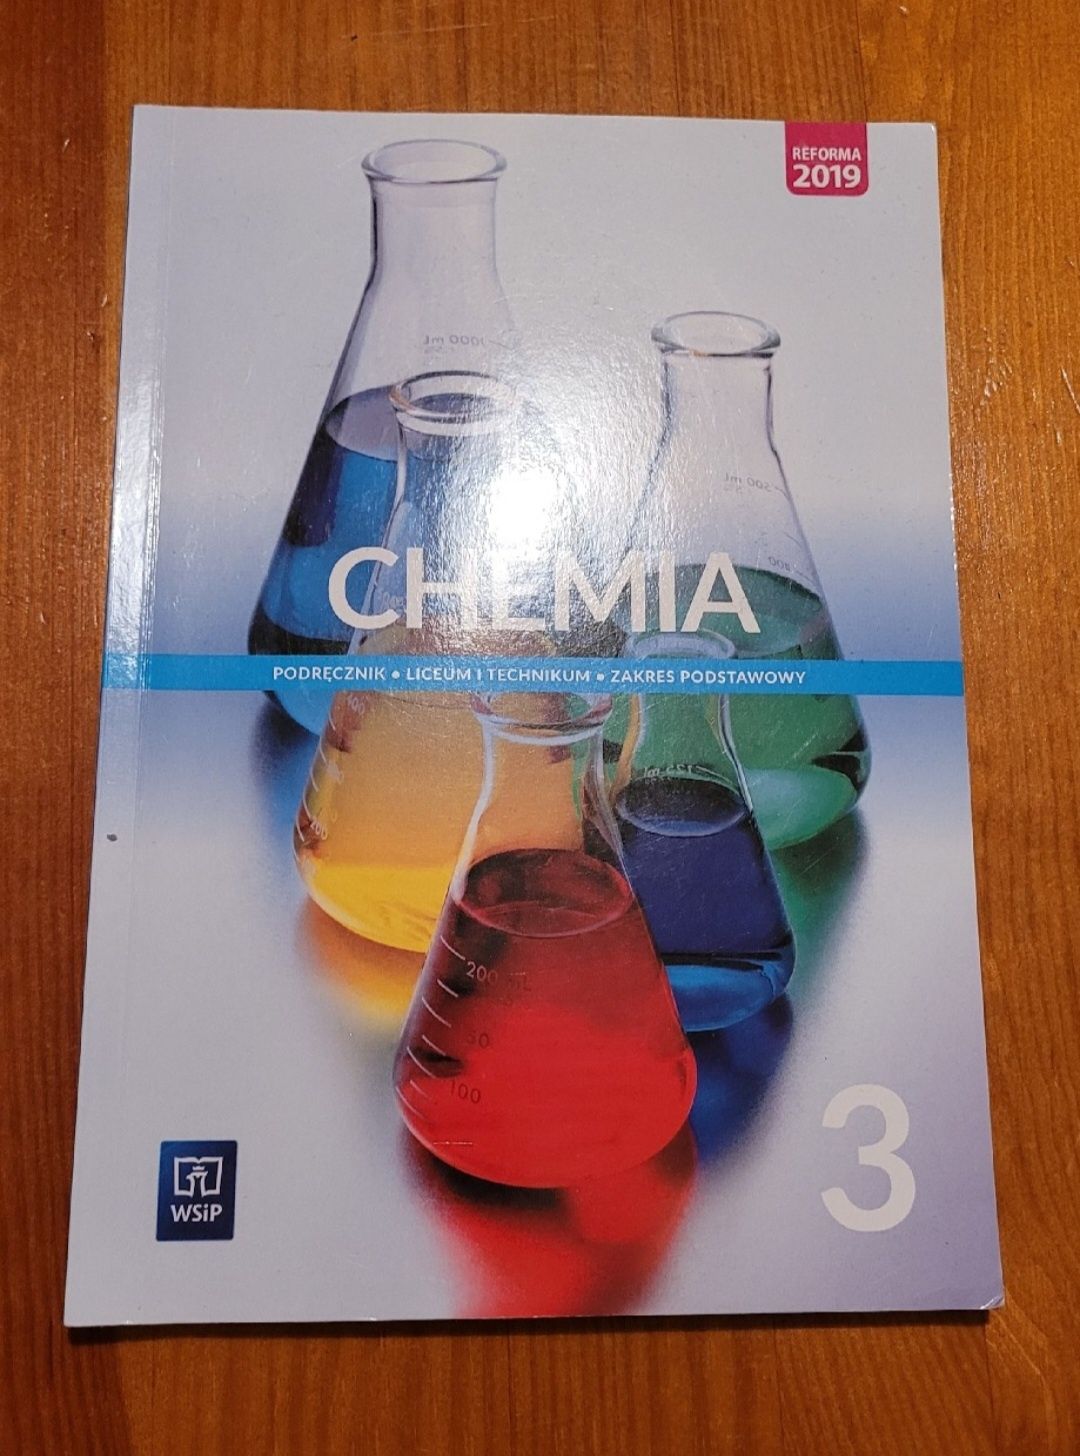 Chemia 3 podręcznik liceum i technikum zakres podstawowy